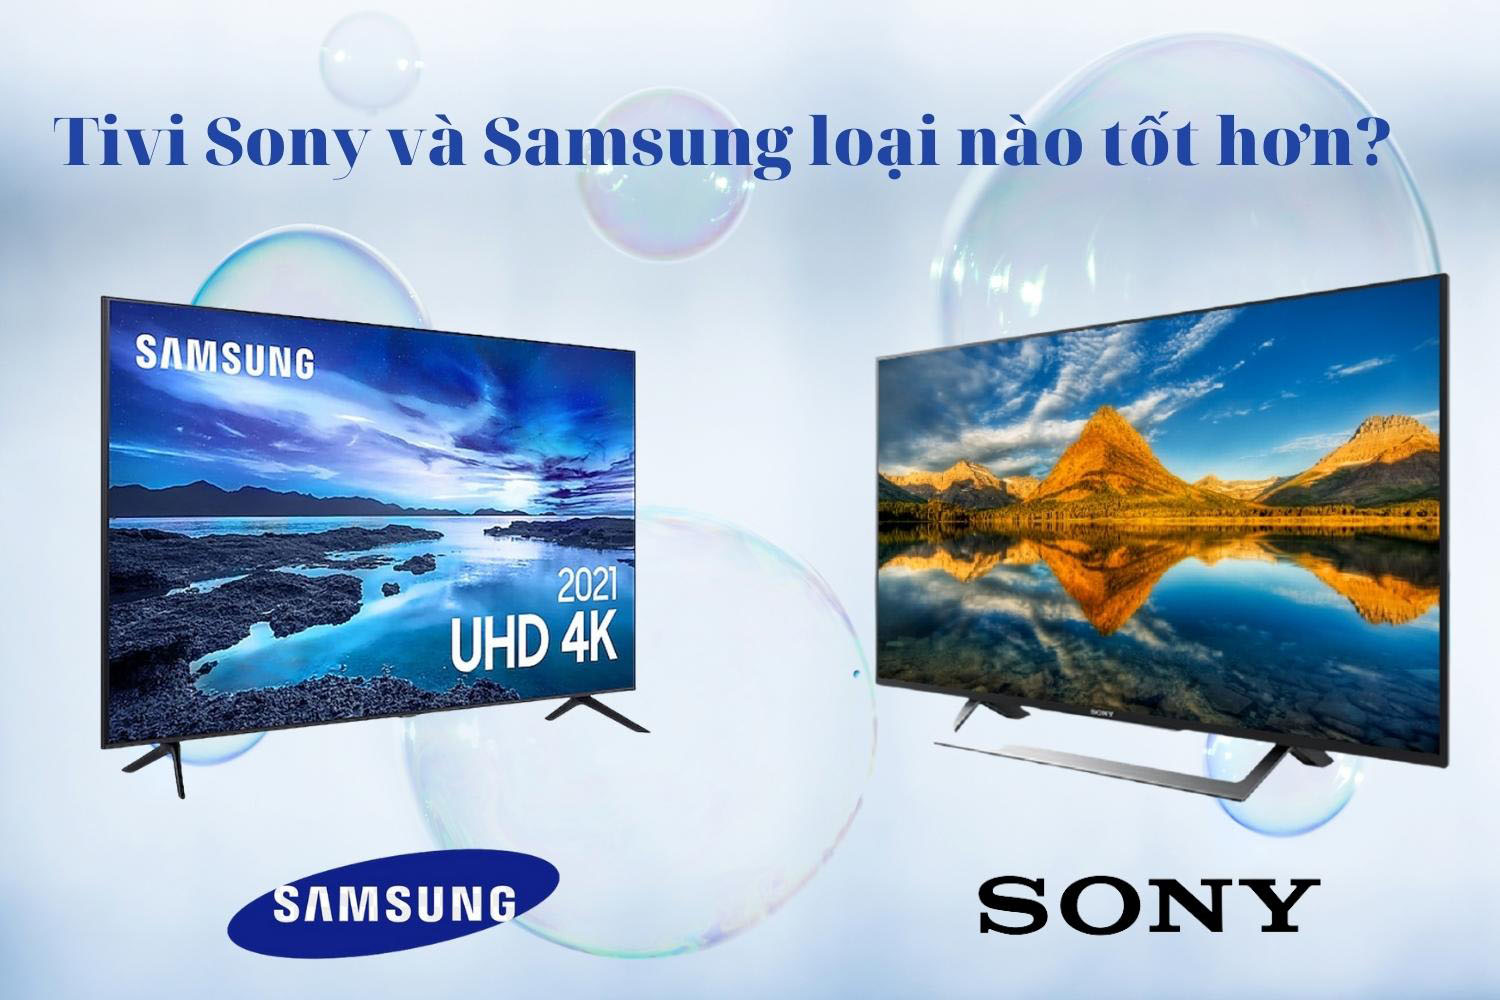 Tivi Sony và Samsung loại nào tốt hơn? Nên mua loại nào?